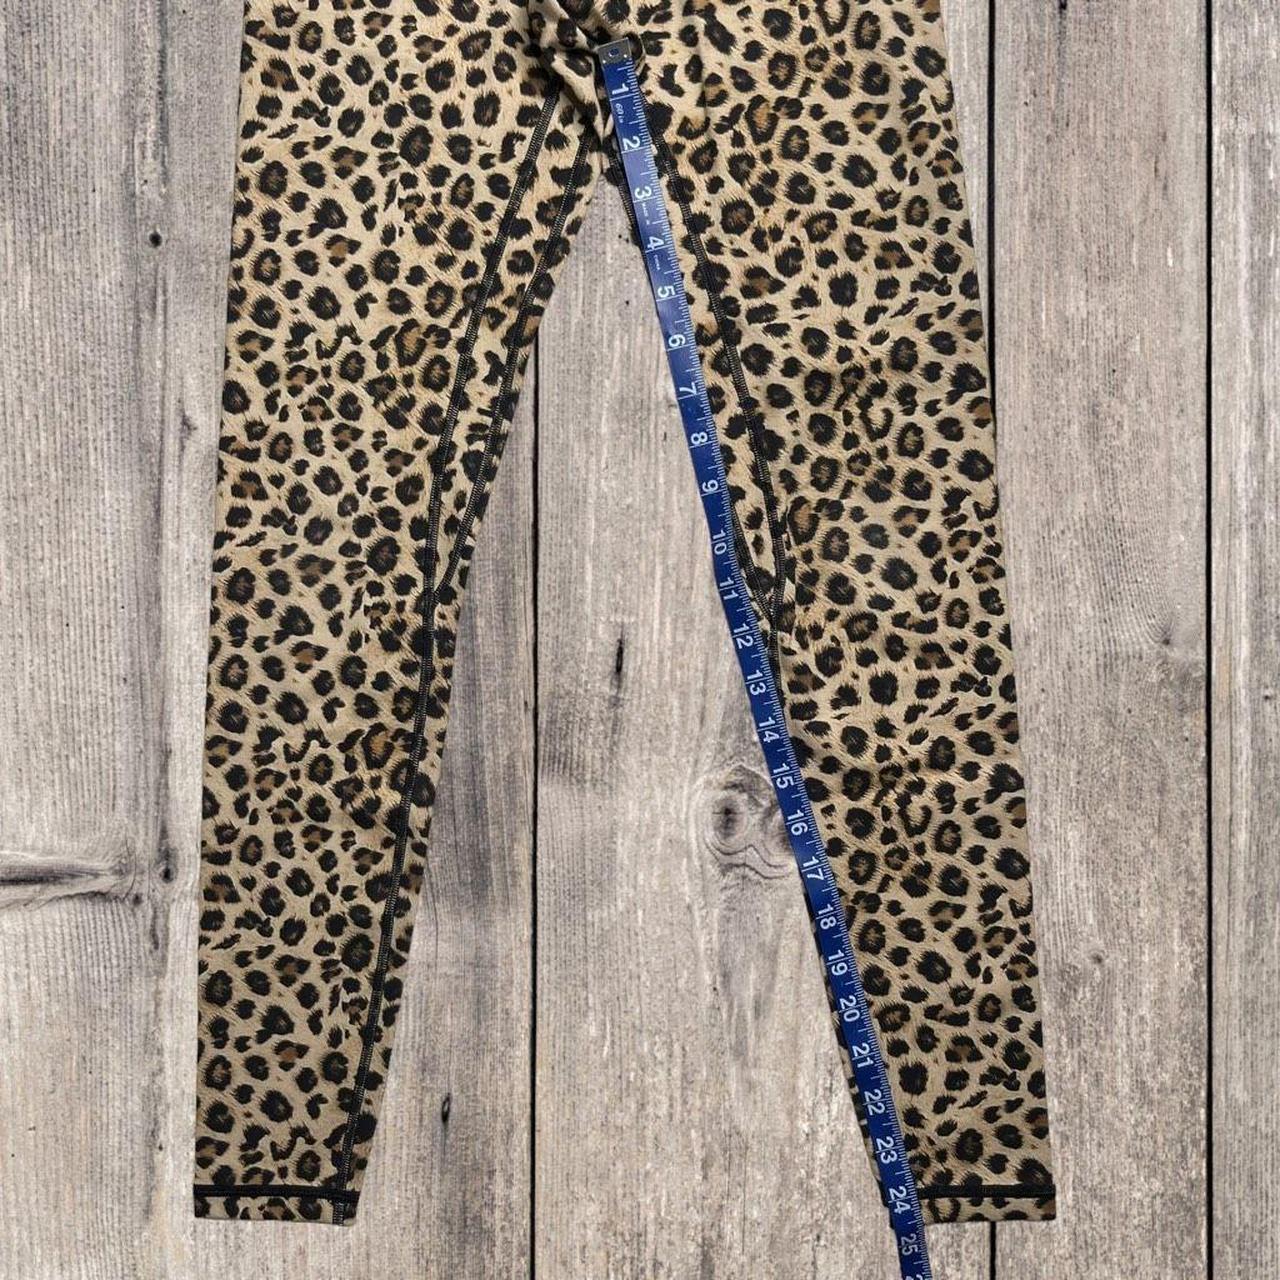 Colorfulkoala Beige Leopard Leggings, Small. If you - Depop